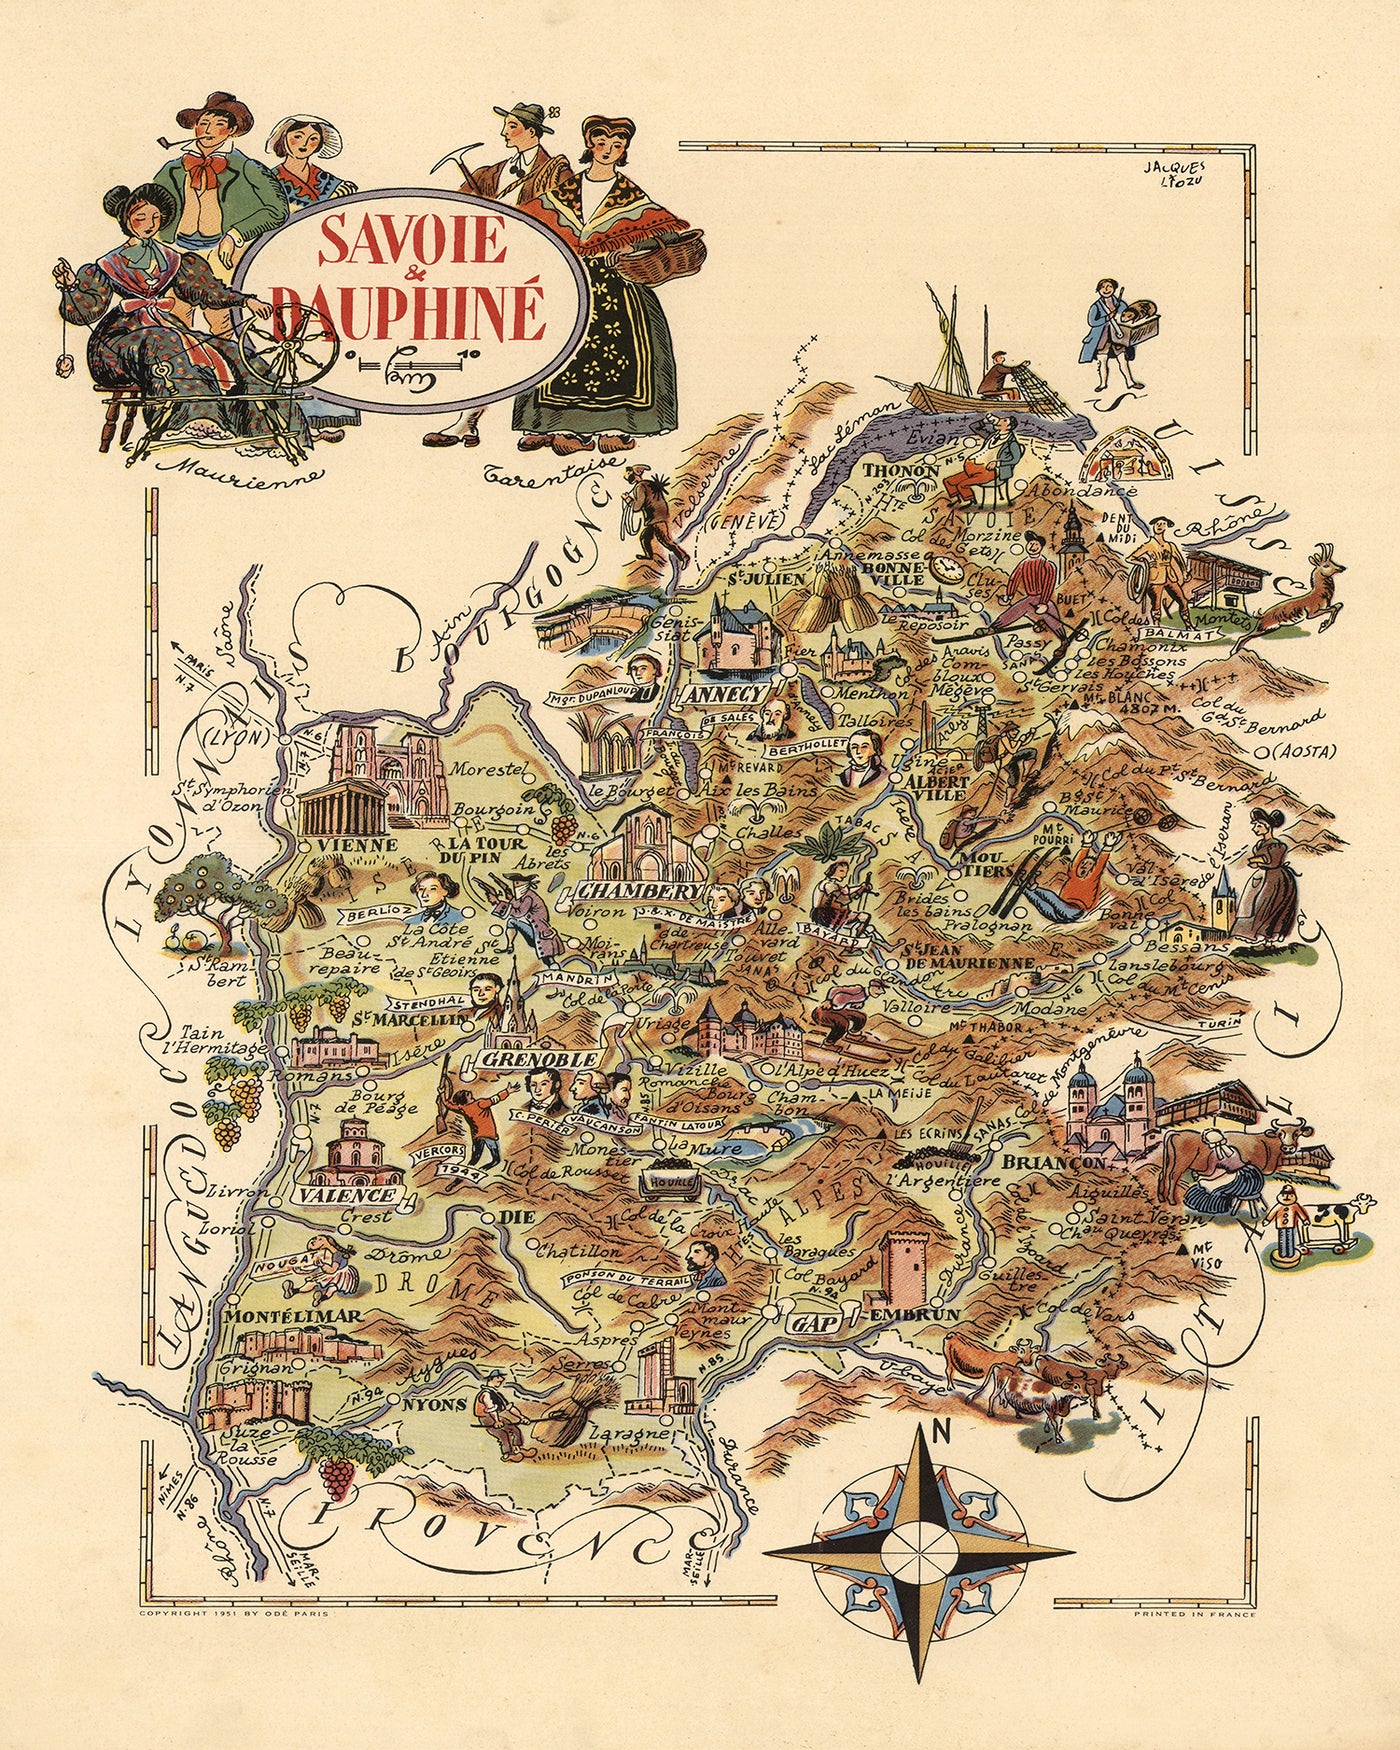 Alte Karte von Savoie & Dauphine, Frankreich von Jacques Liozu, 1951: Alpen, Grenoble, Chambéry, Annecy